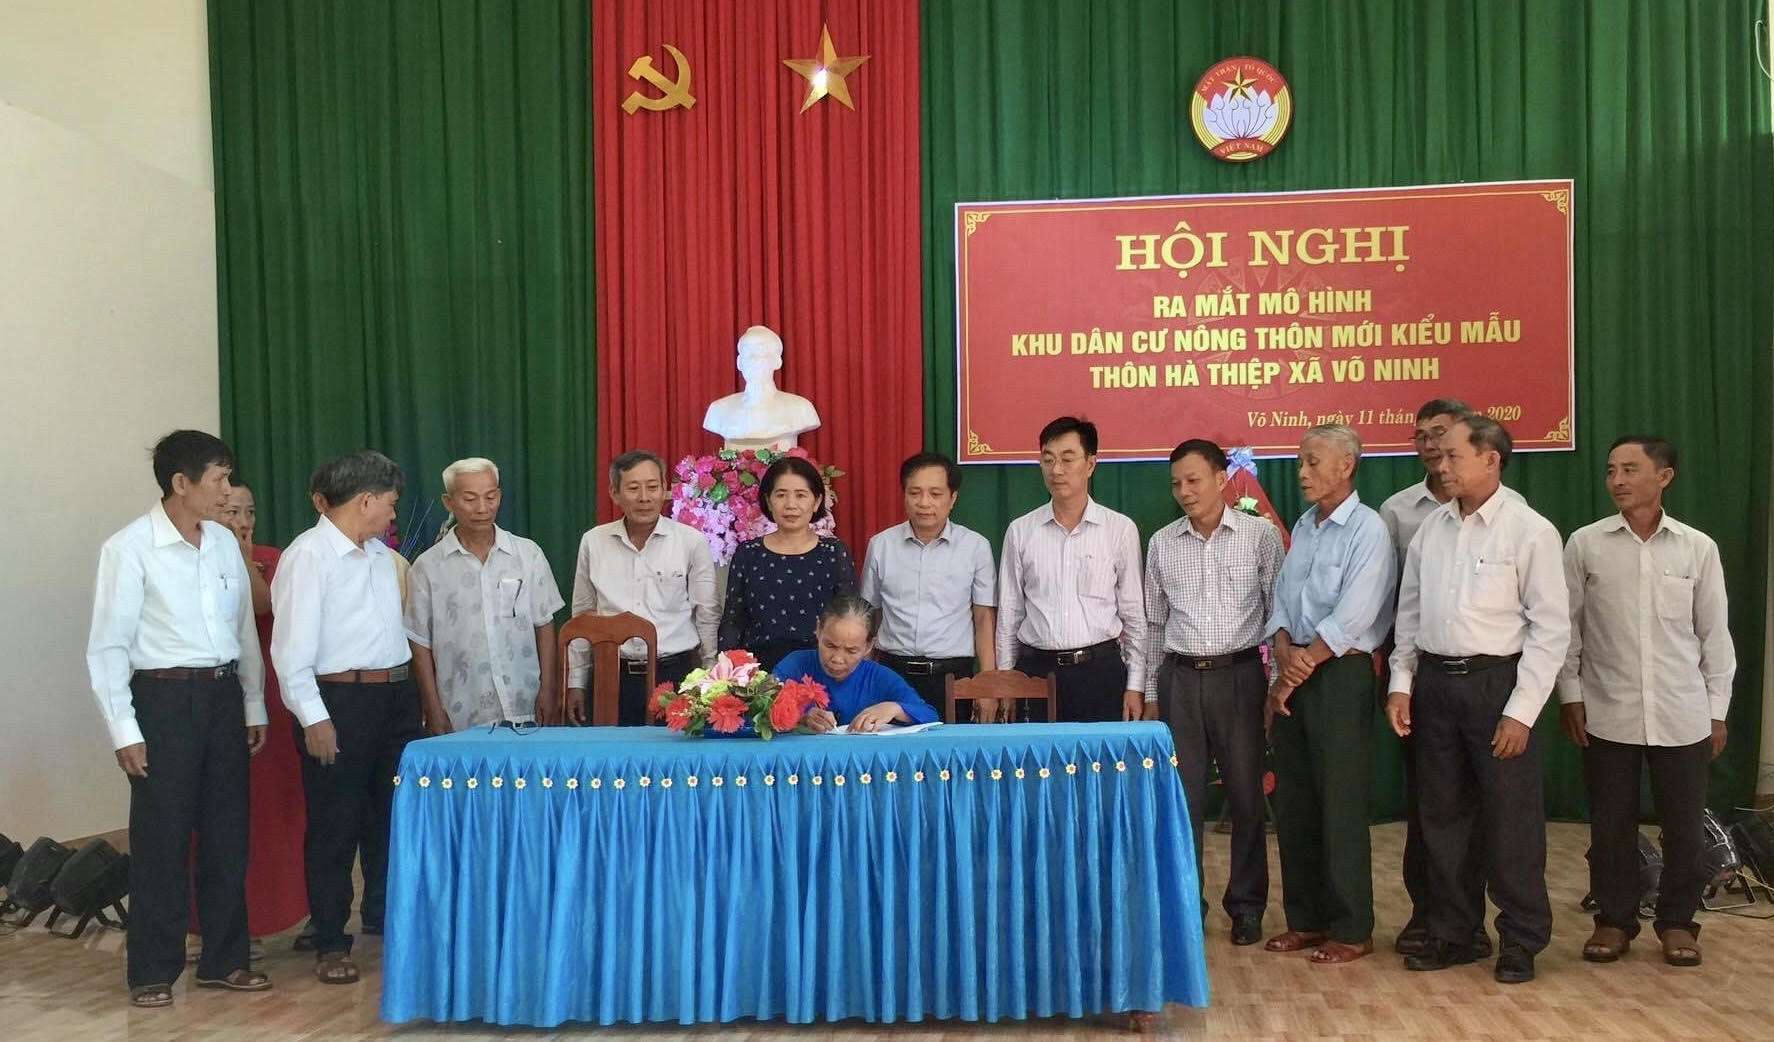    Ký kết cam kết xây dựng mô hình KDC NTMKM tại thôn Hà Thiệp, xã Võ Ninh, huyện Quảng Ninh.